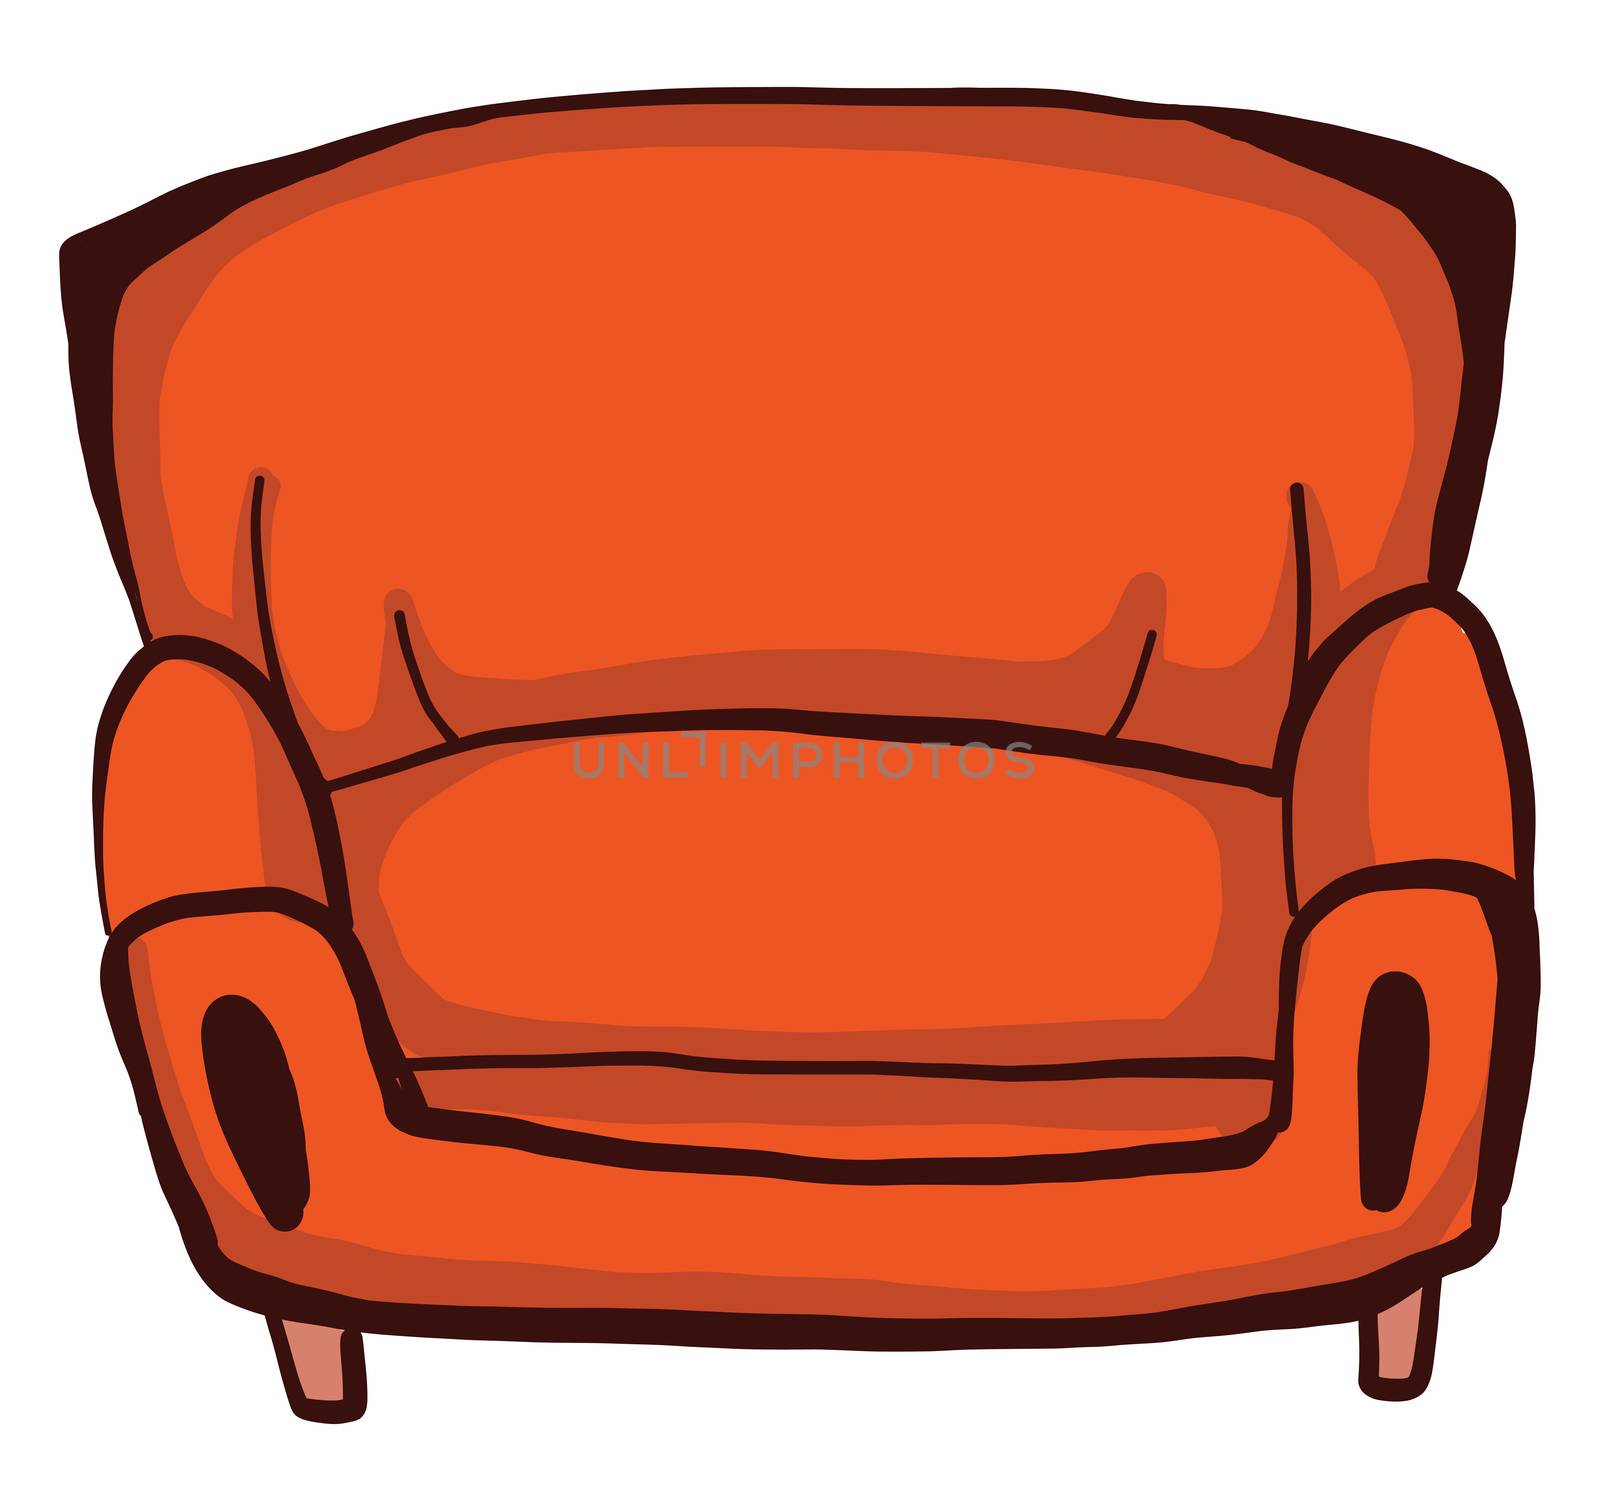 Orange armchair , illustration, vector on white background by Morphart